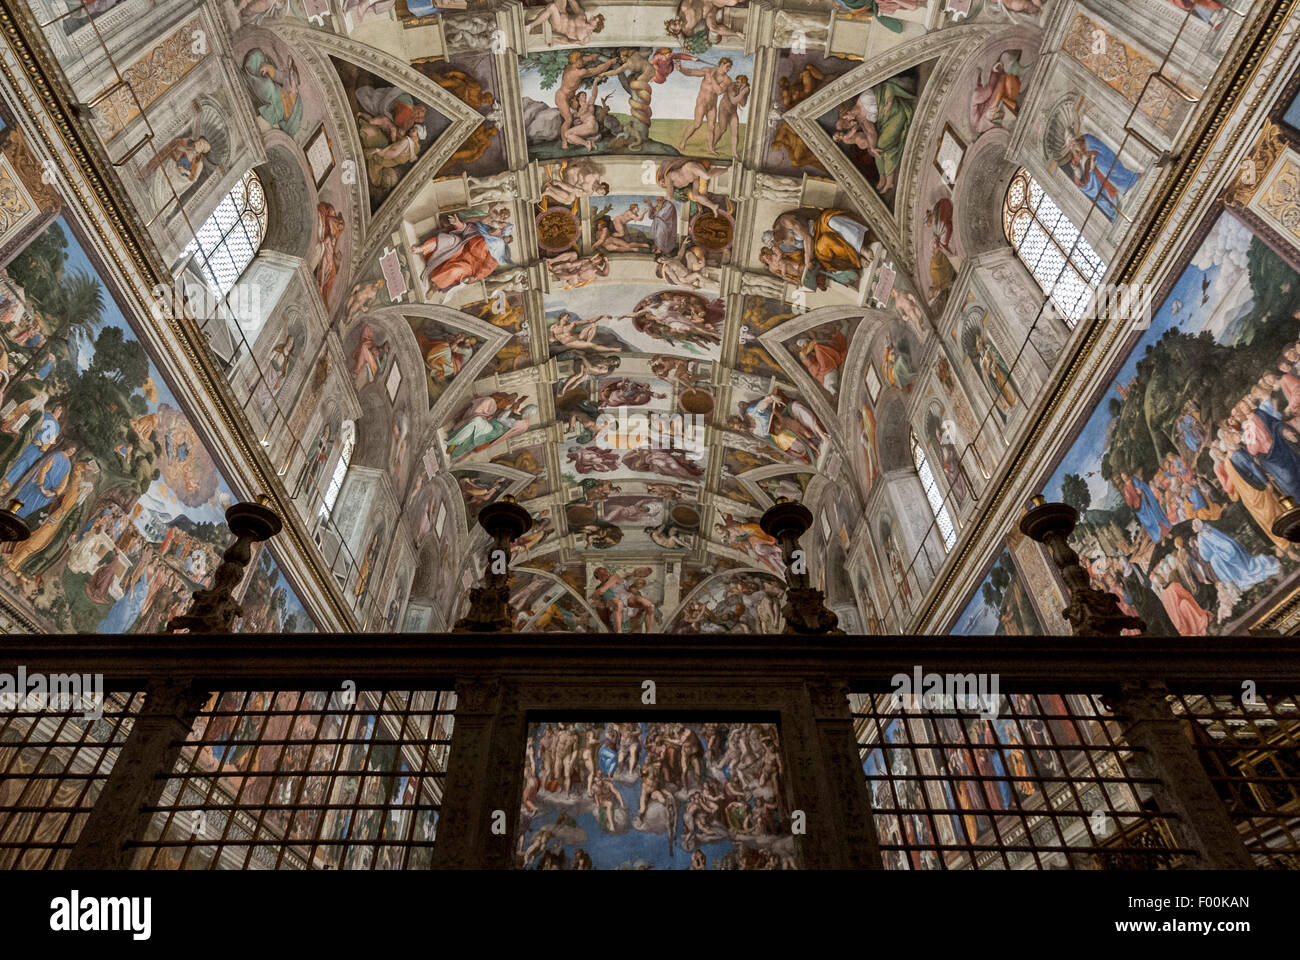 Decke der Sixtinischen Kapelle von Michelangelo gemalt. Vatikanische Museen, Vatikanstadt, Rom Italien Stockfoto